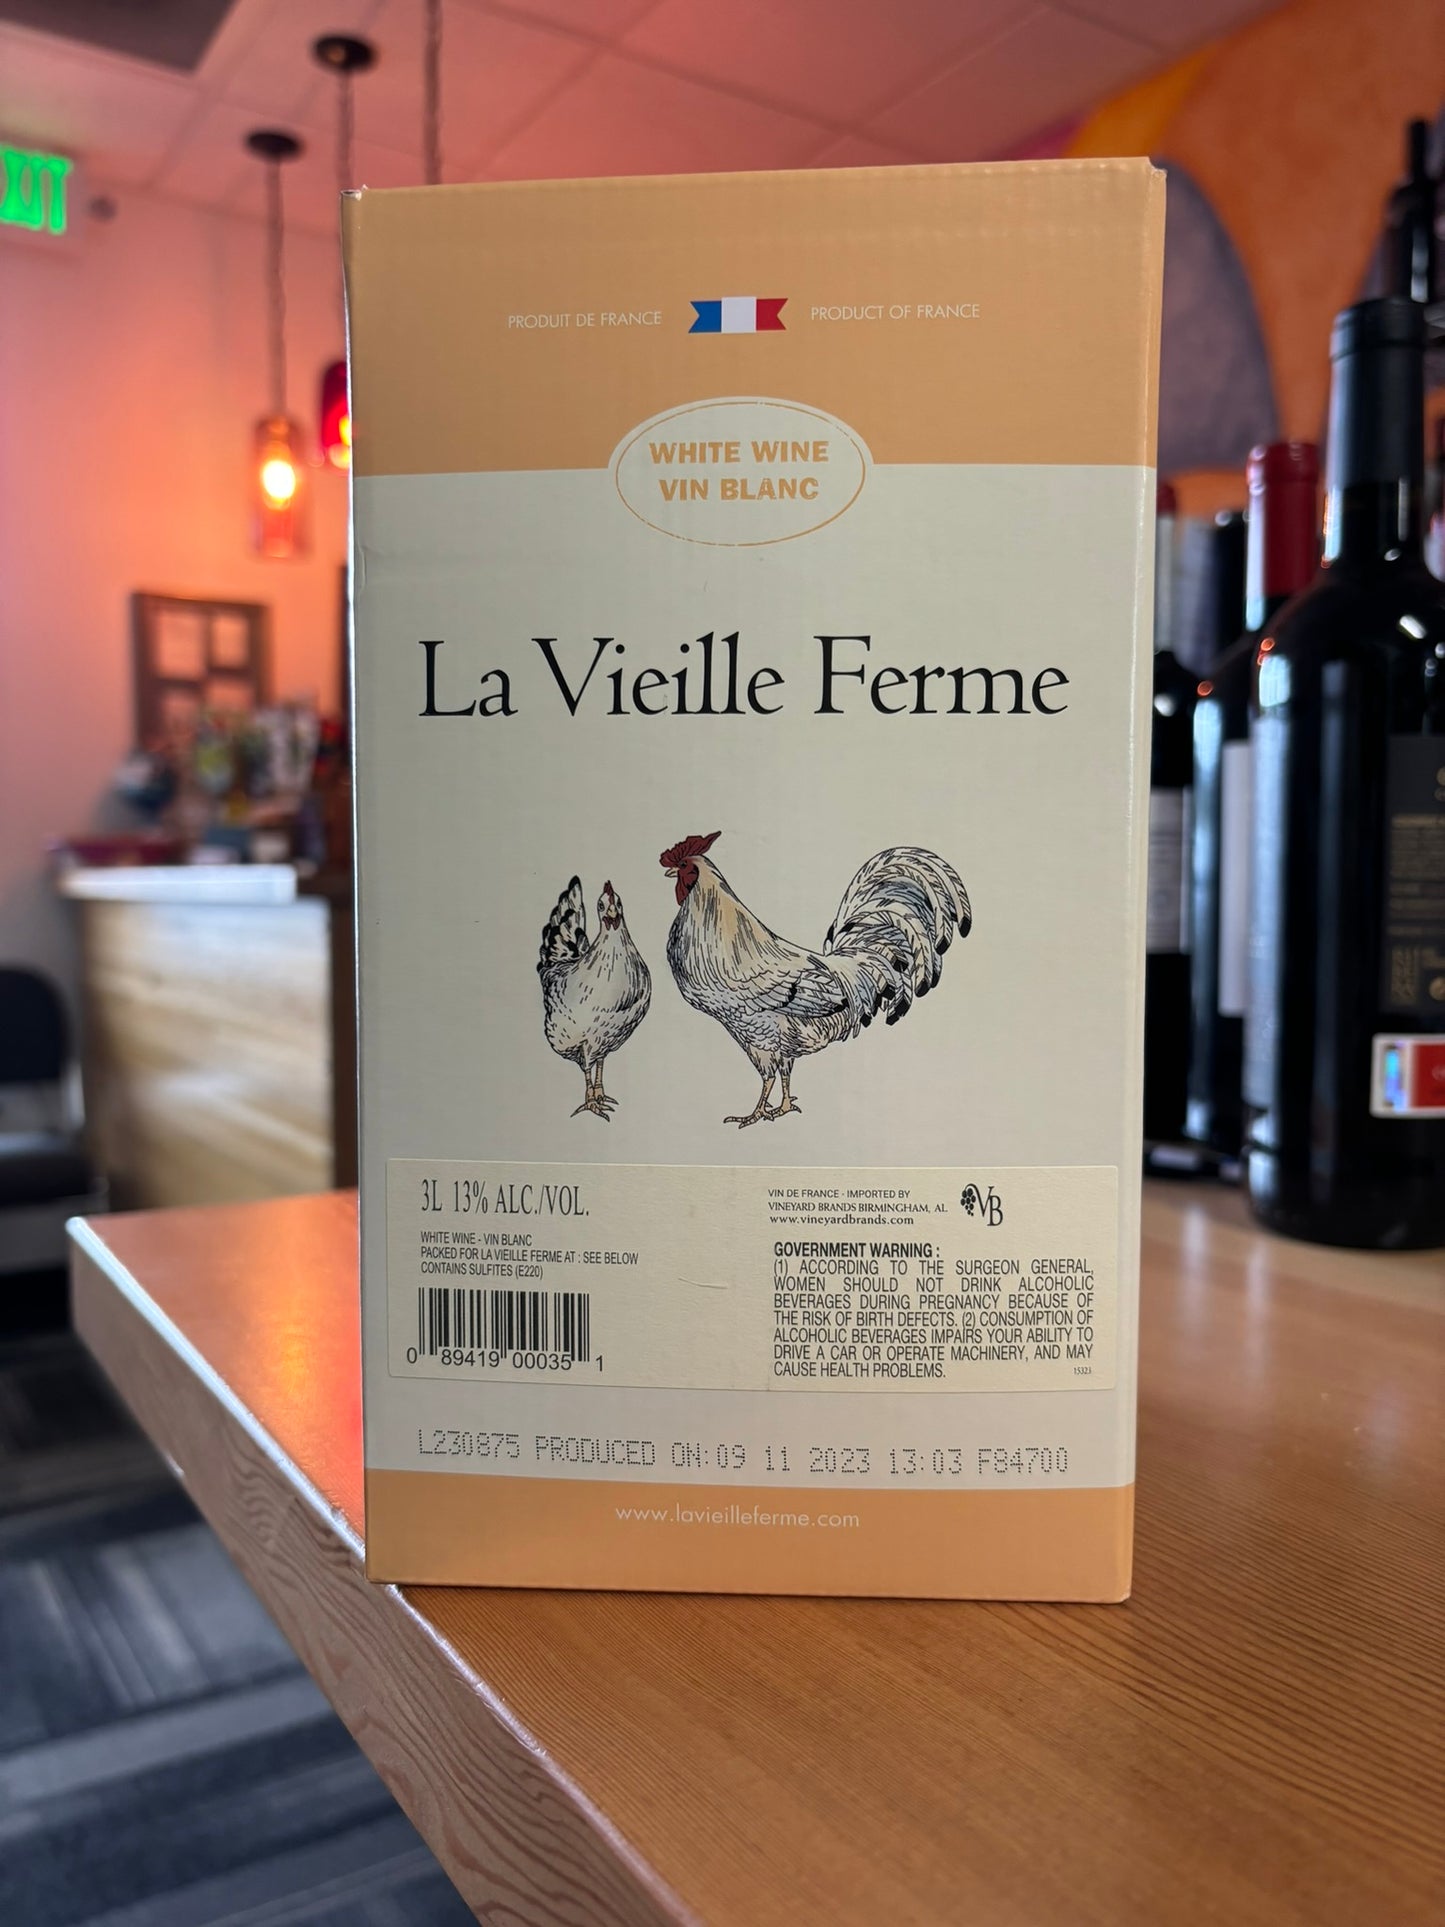 LA VIEILLE FERME NV White Bag in Box (France)